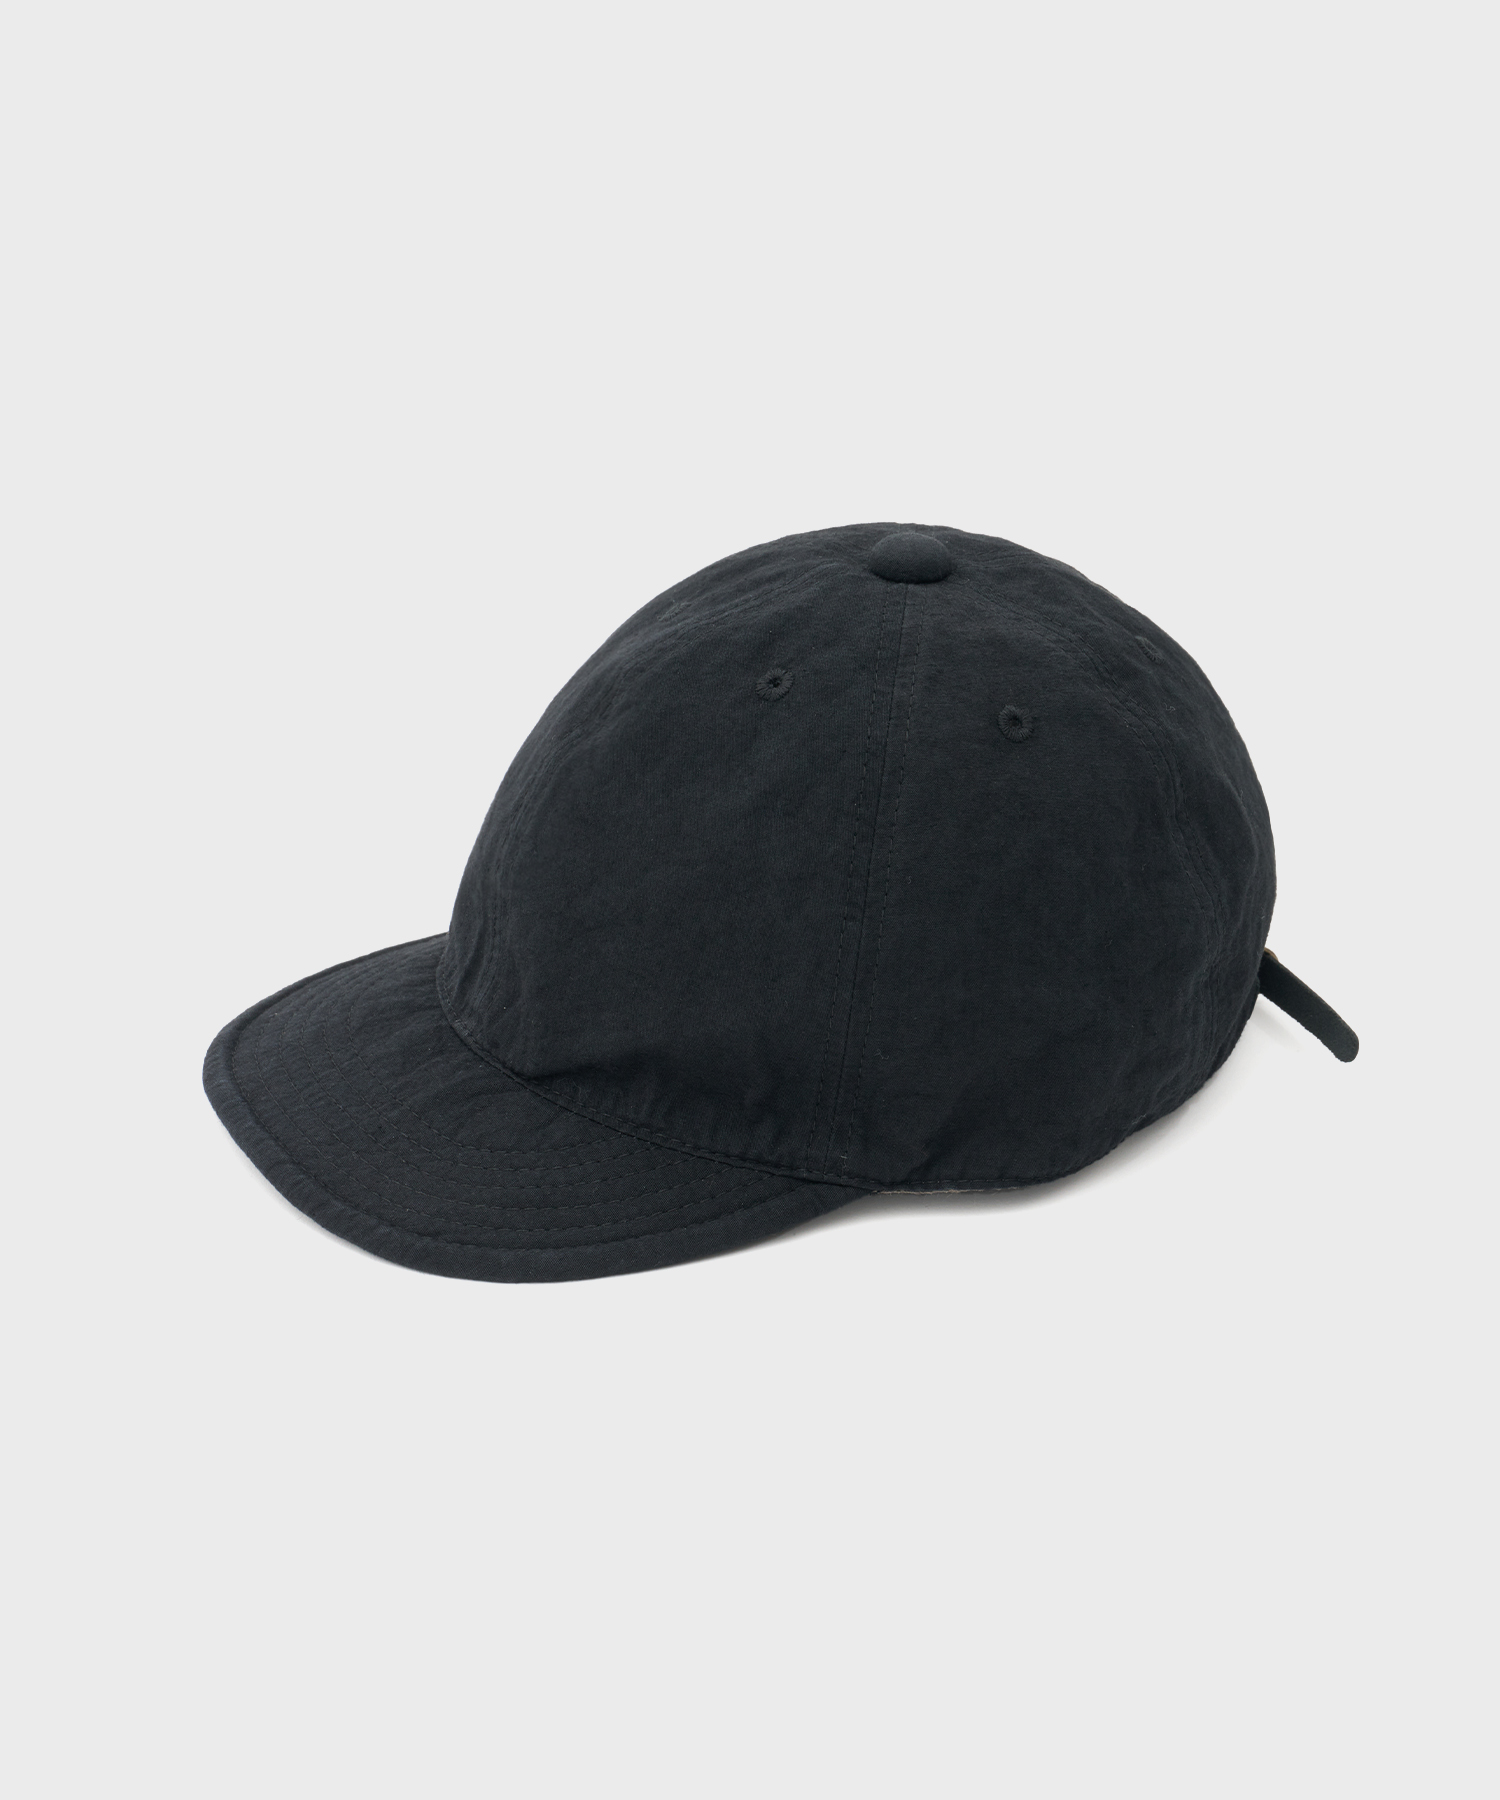 Cotton Linen Weather Cap (Black)